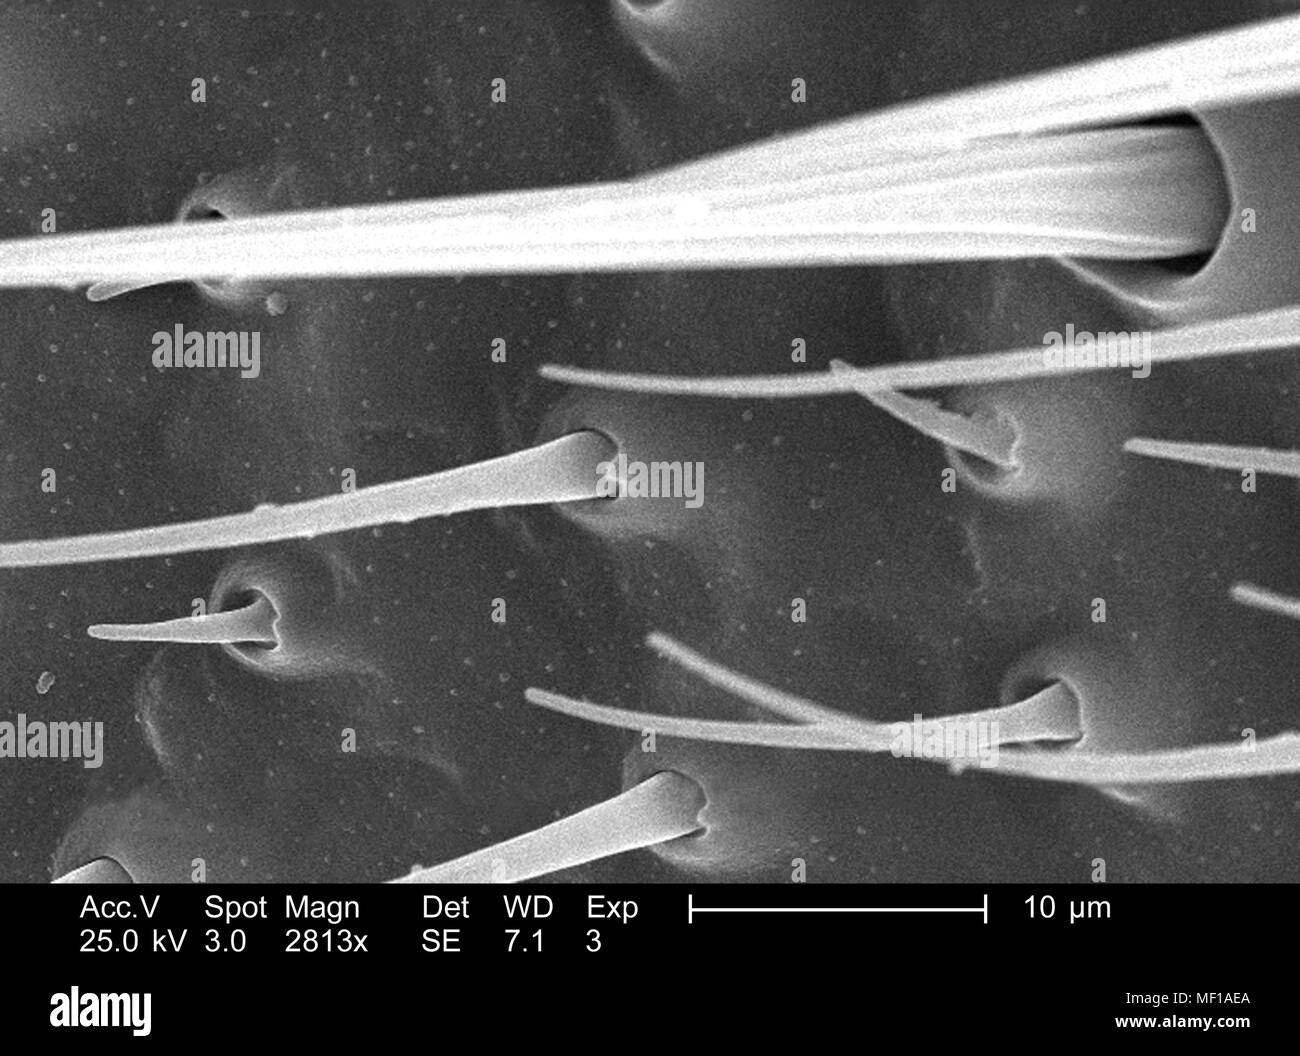 Dettagli ultrastrutturali e i peli sensoriali (Setae) di una antenna a forma di libellula, raffigurato nel 2813x di scansione ingrandita al microscopio elettronico (SEM) immagine, 2005. Immagine cortesia di centri per il controllo delle malattie (CDC) / Janice Haney Carr, Connie fiori. () Foto Stock